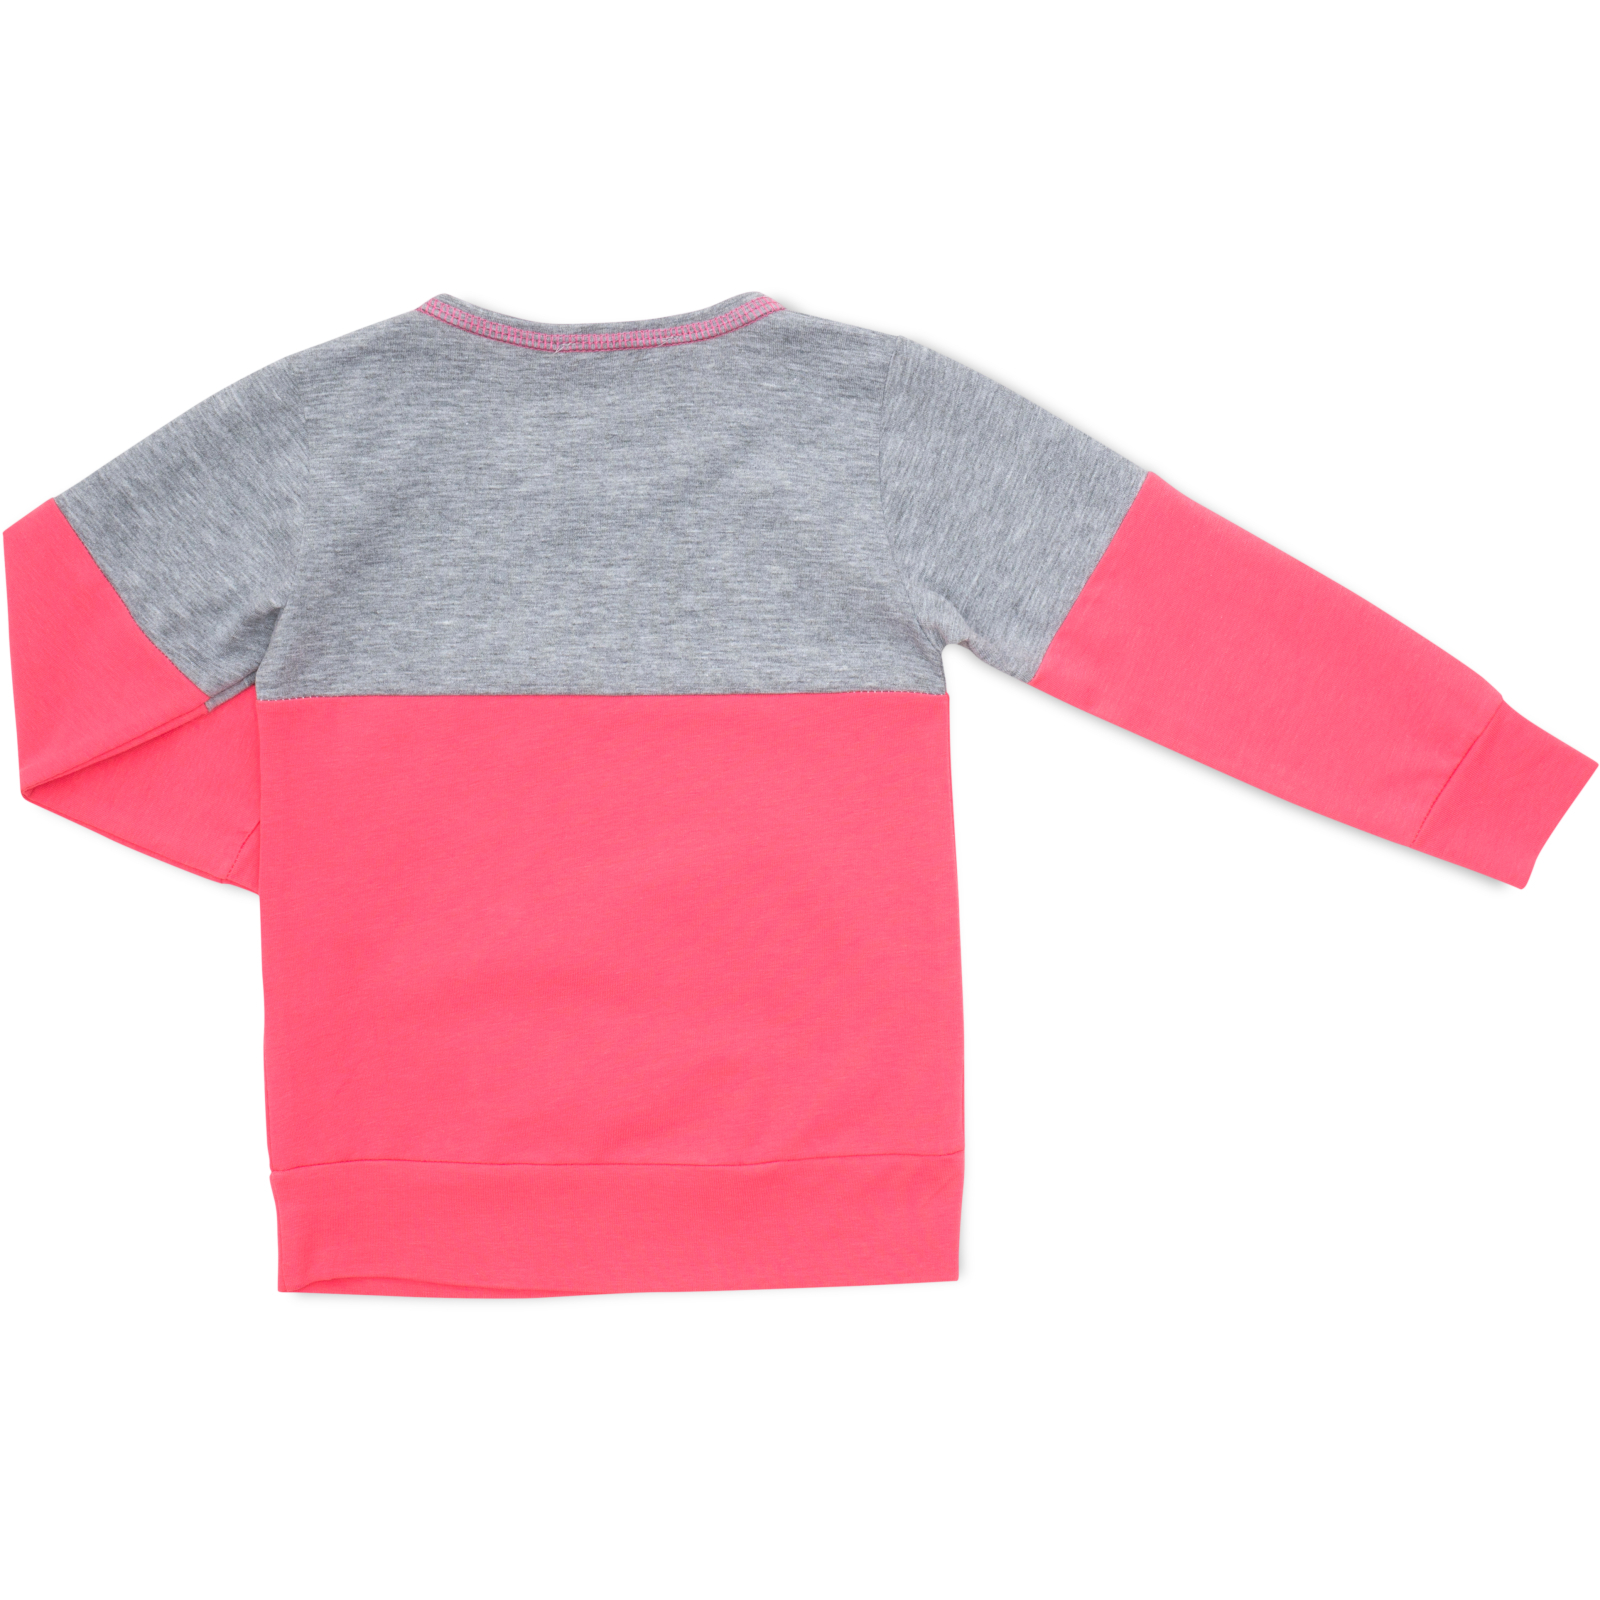 Пижама Matilda со звездочками (7167-110G-pink) изображение 5